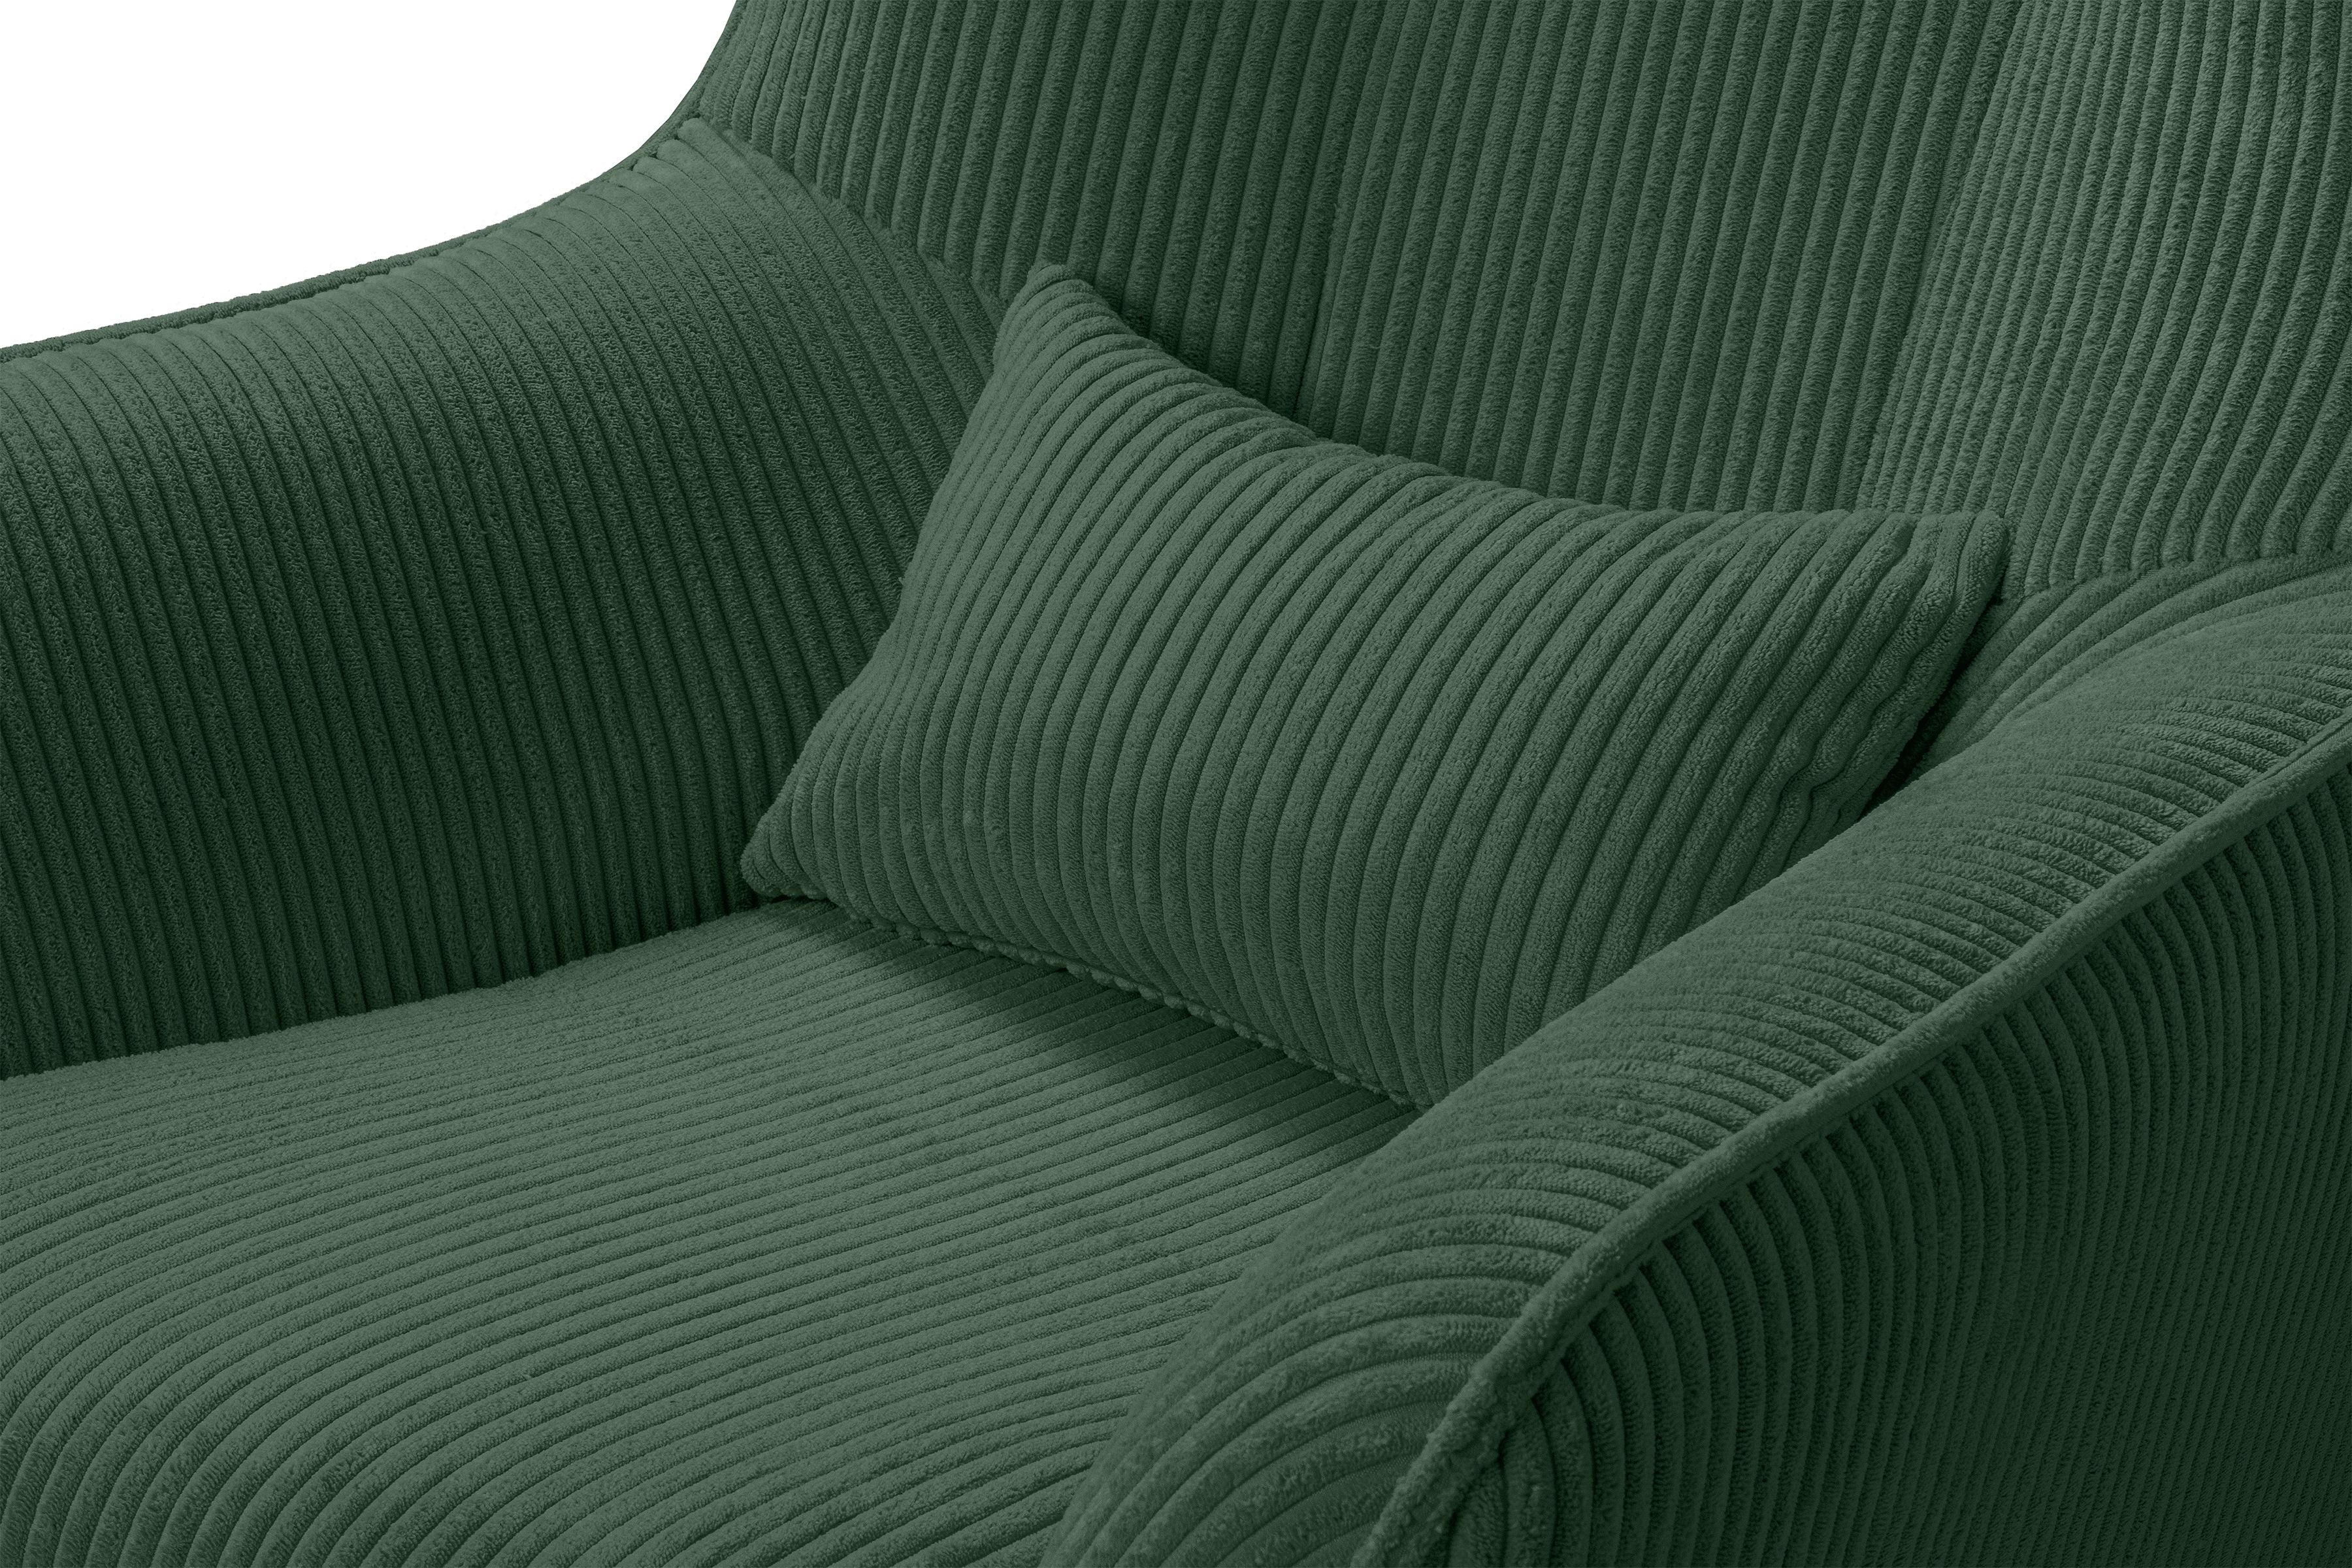 Fotel wypoczynkowy Dylian z podnóżkiem - zielony sztruks Poso 14 / nogi wenge Fotel wypoczynkowy Dylian z podnóżkiem - zielony sztruks Poso 14 / nogi wenge